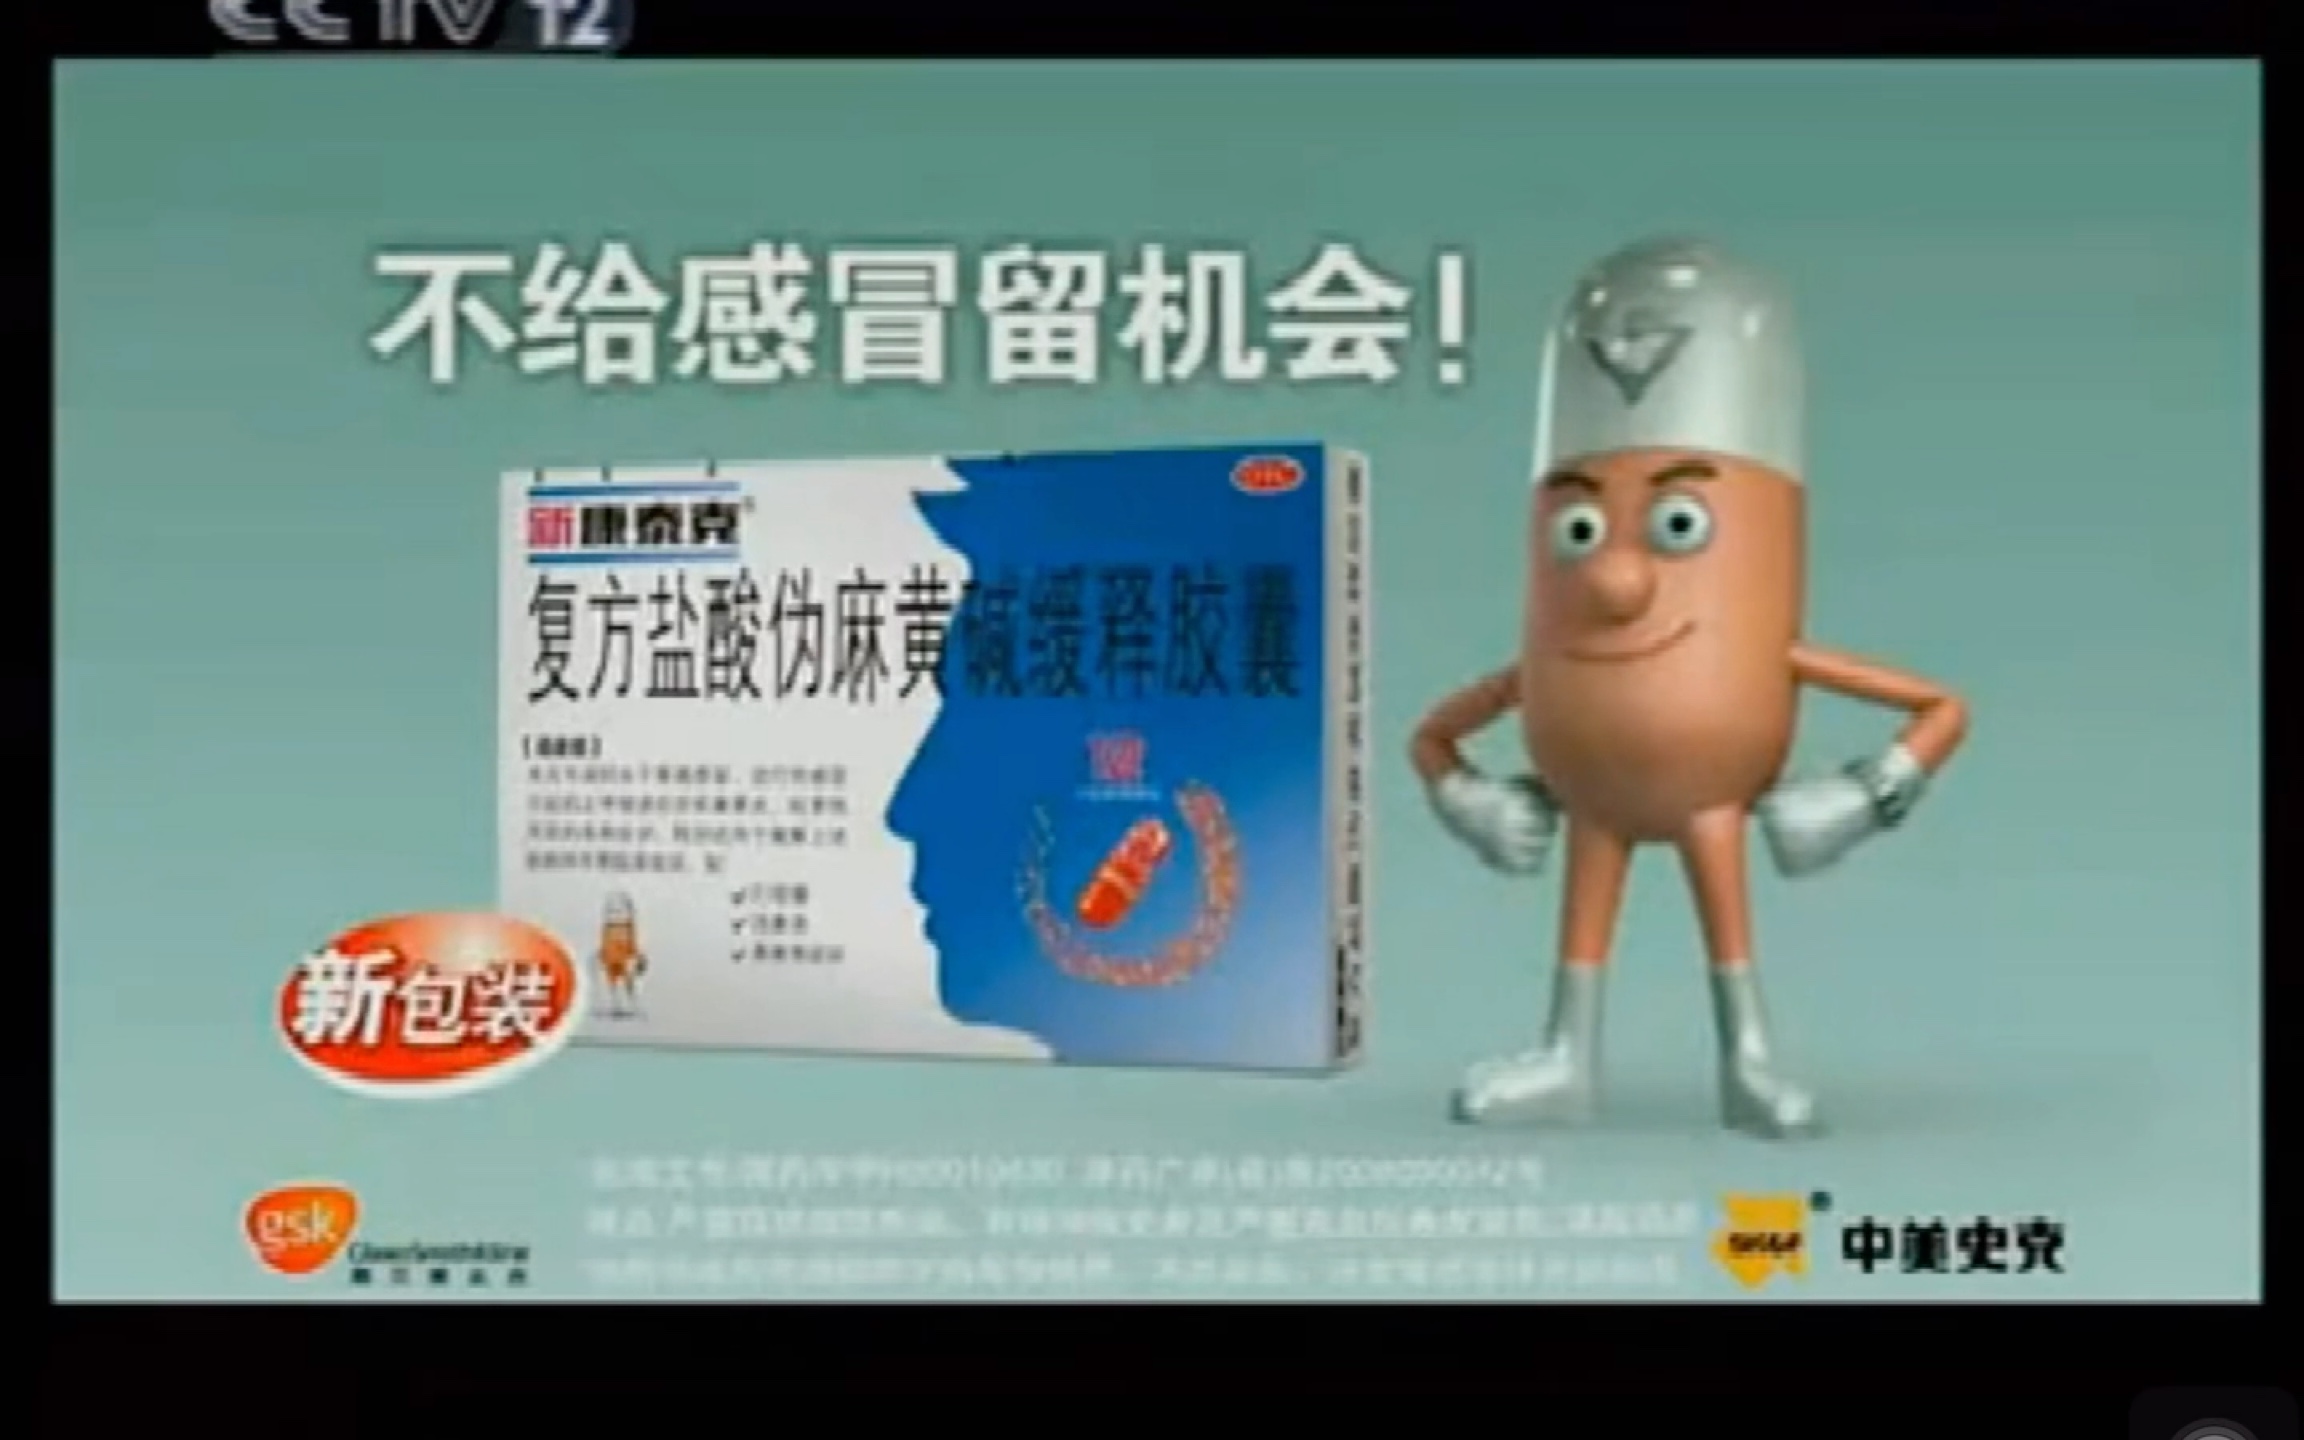 【中国大陆广告】新康泰克 复方盐酸伪麻黄碱缓释胶囊 2008年